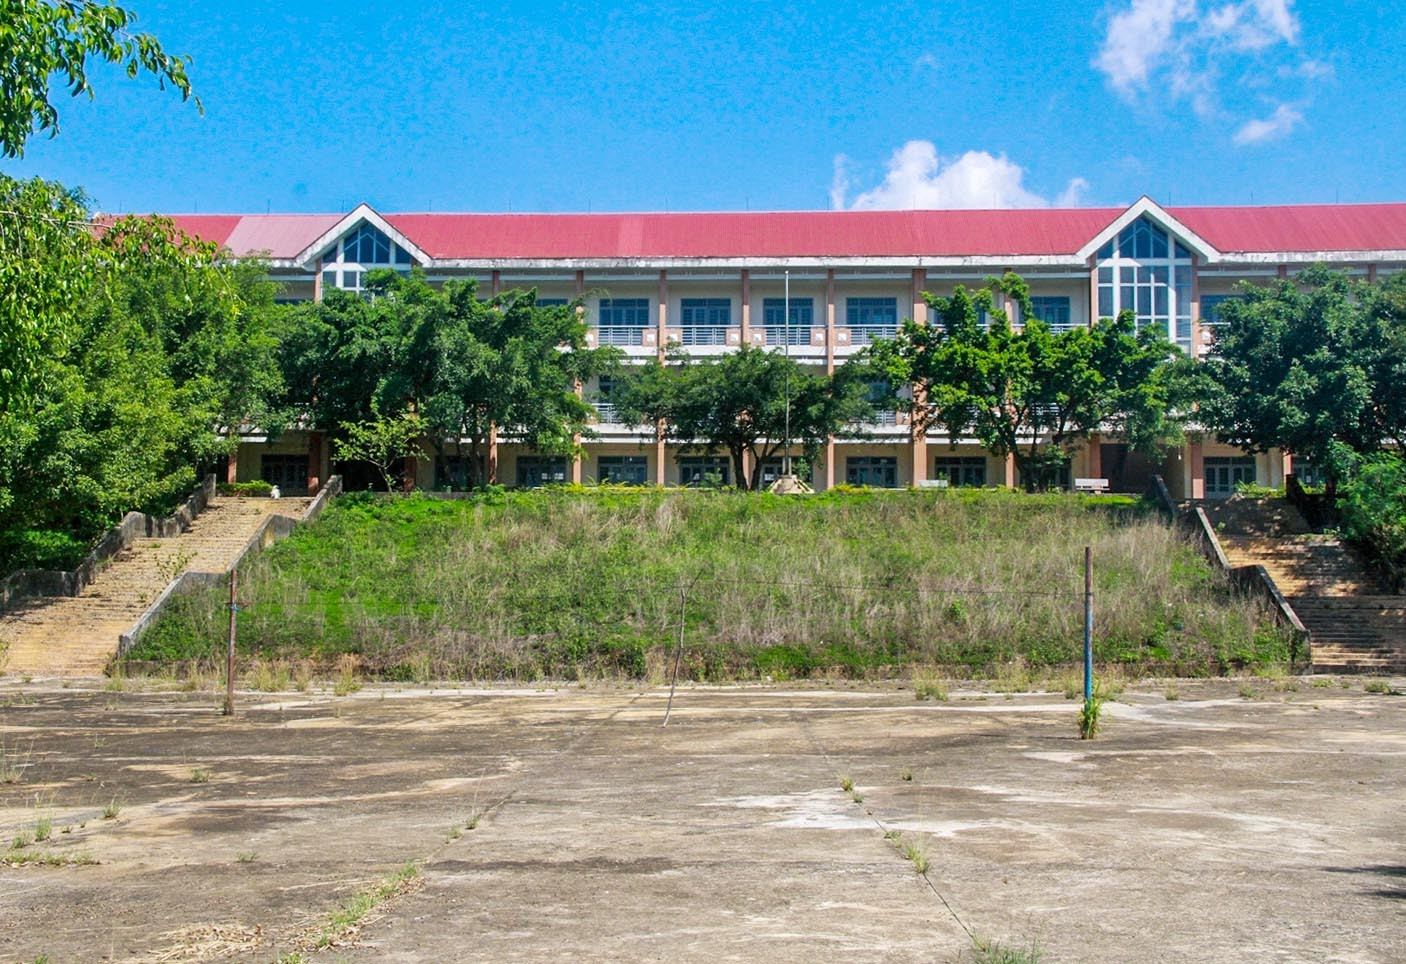 Trường THPT Phan Chu Trinh phân hiệu 2 đóng cửa, bỏ không thời gian dài